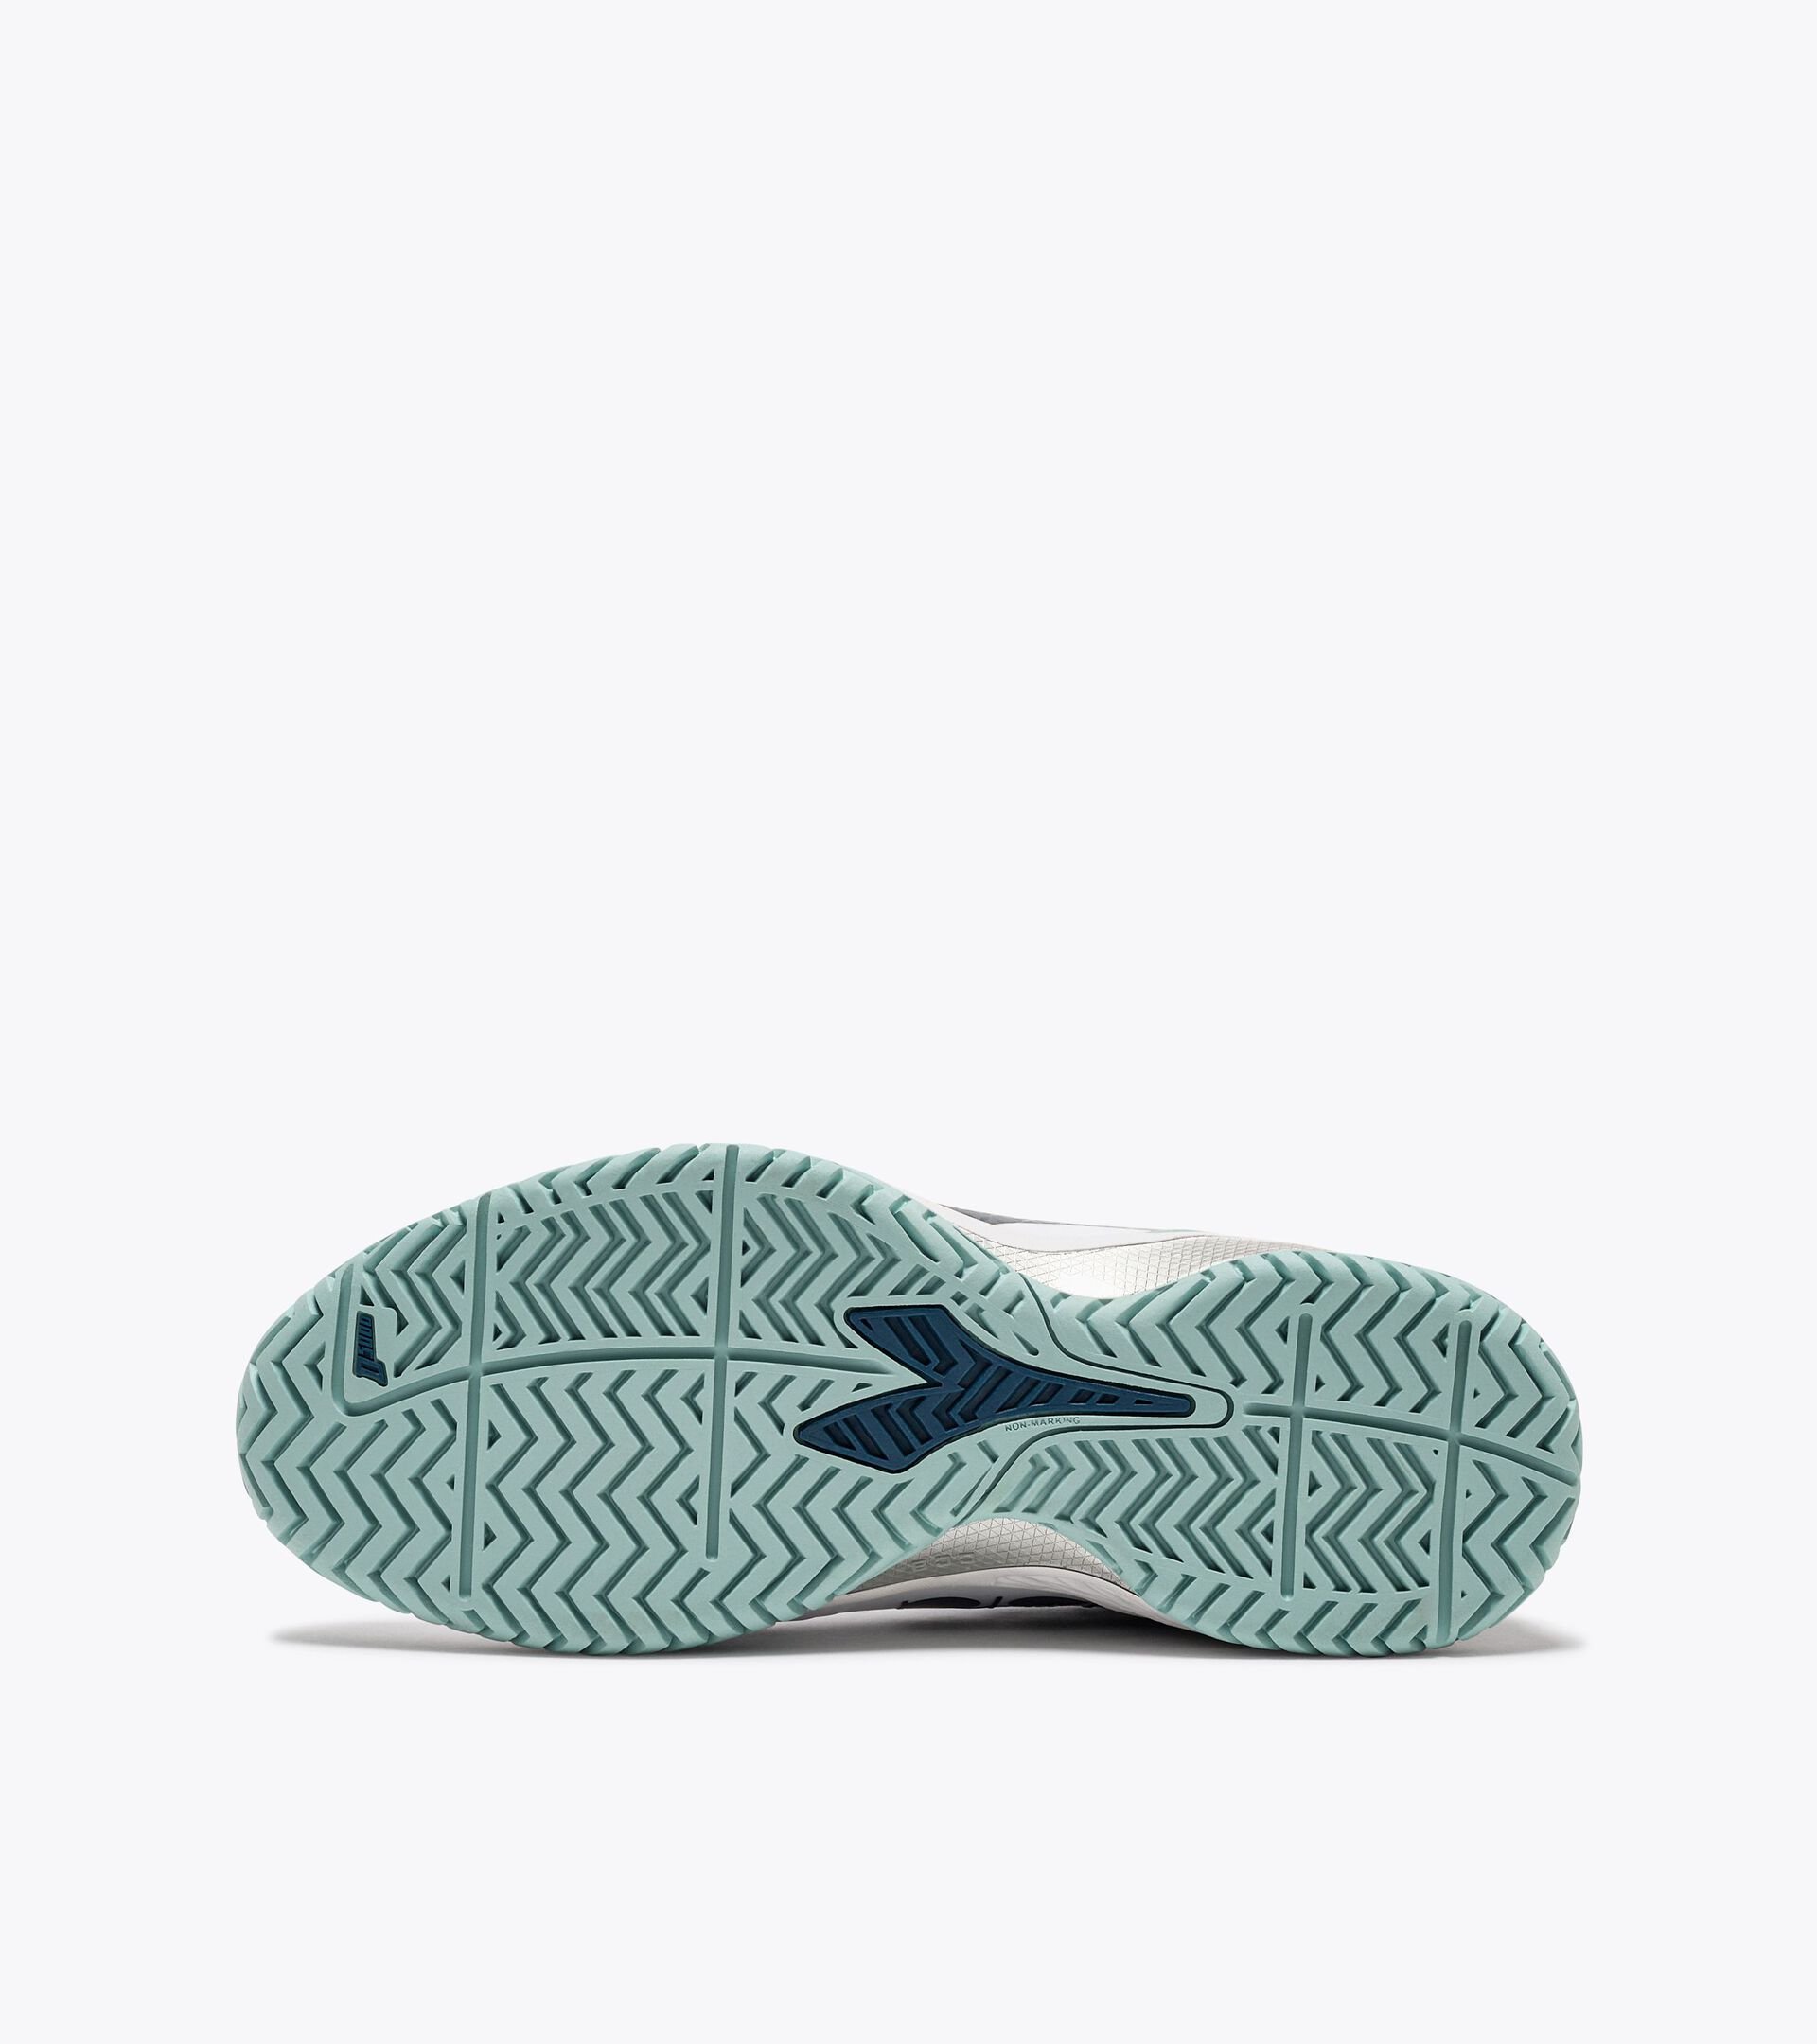 Zapatillas de tenis para terrenos duros o de tierra batida - Mujer  BLUSHIELD TORNEO 2 W AG WHITE/LEGION BLUE/SURF SPRAY - Diadora